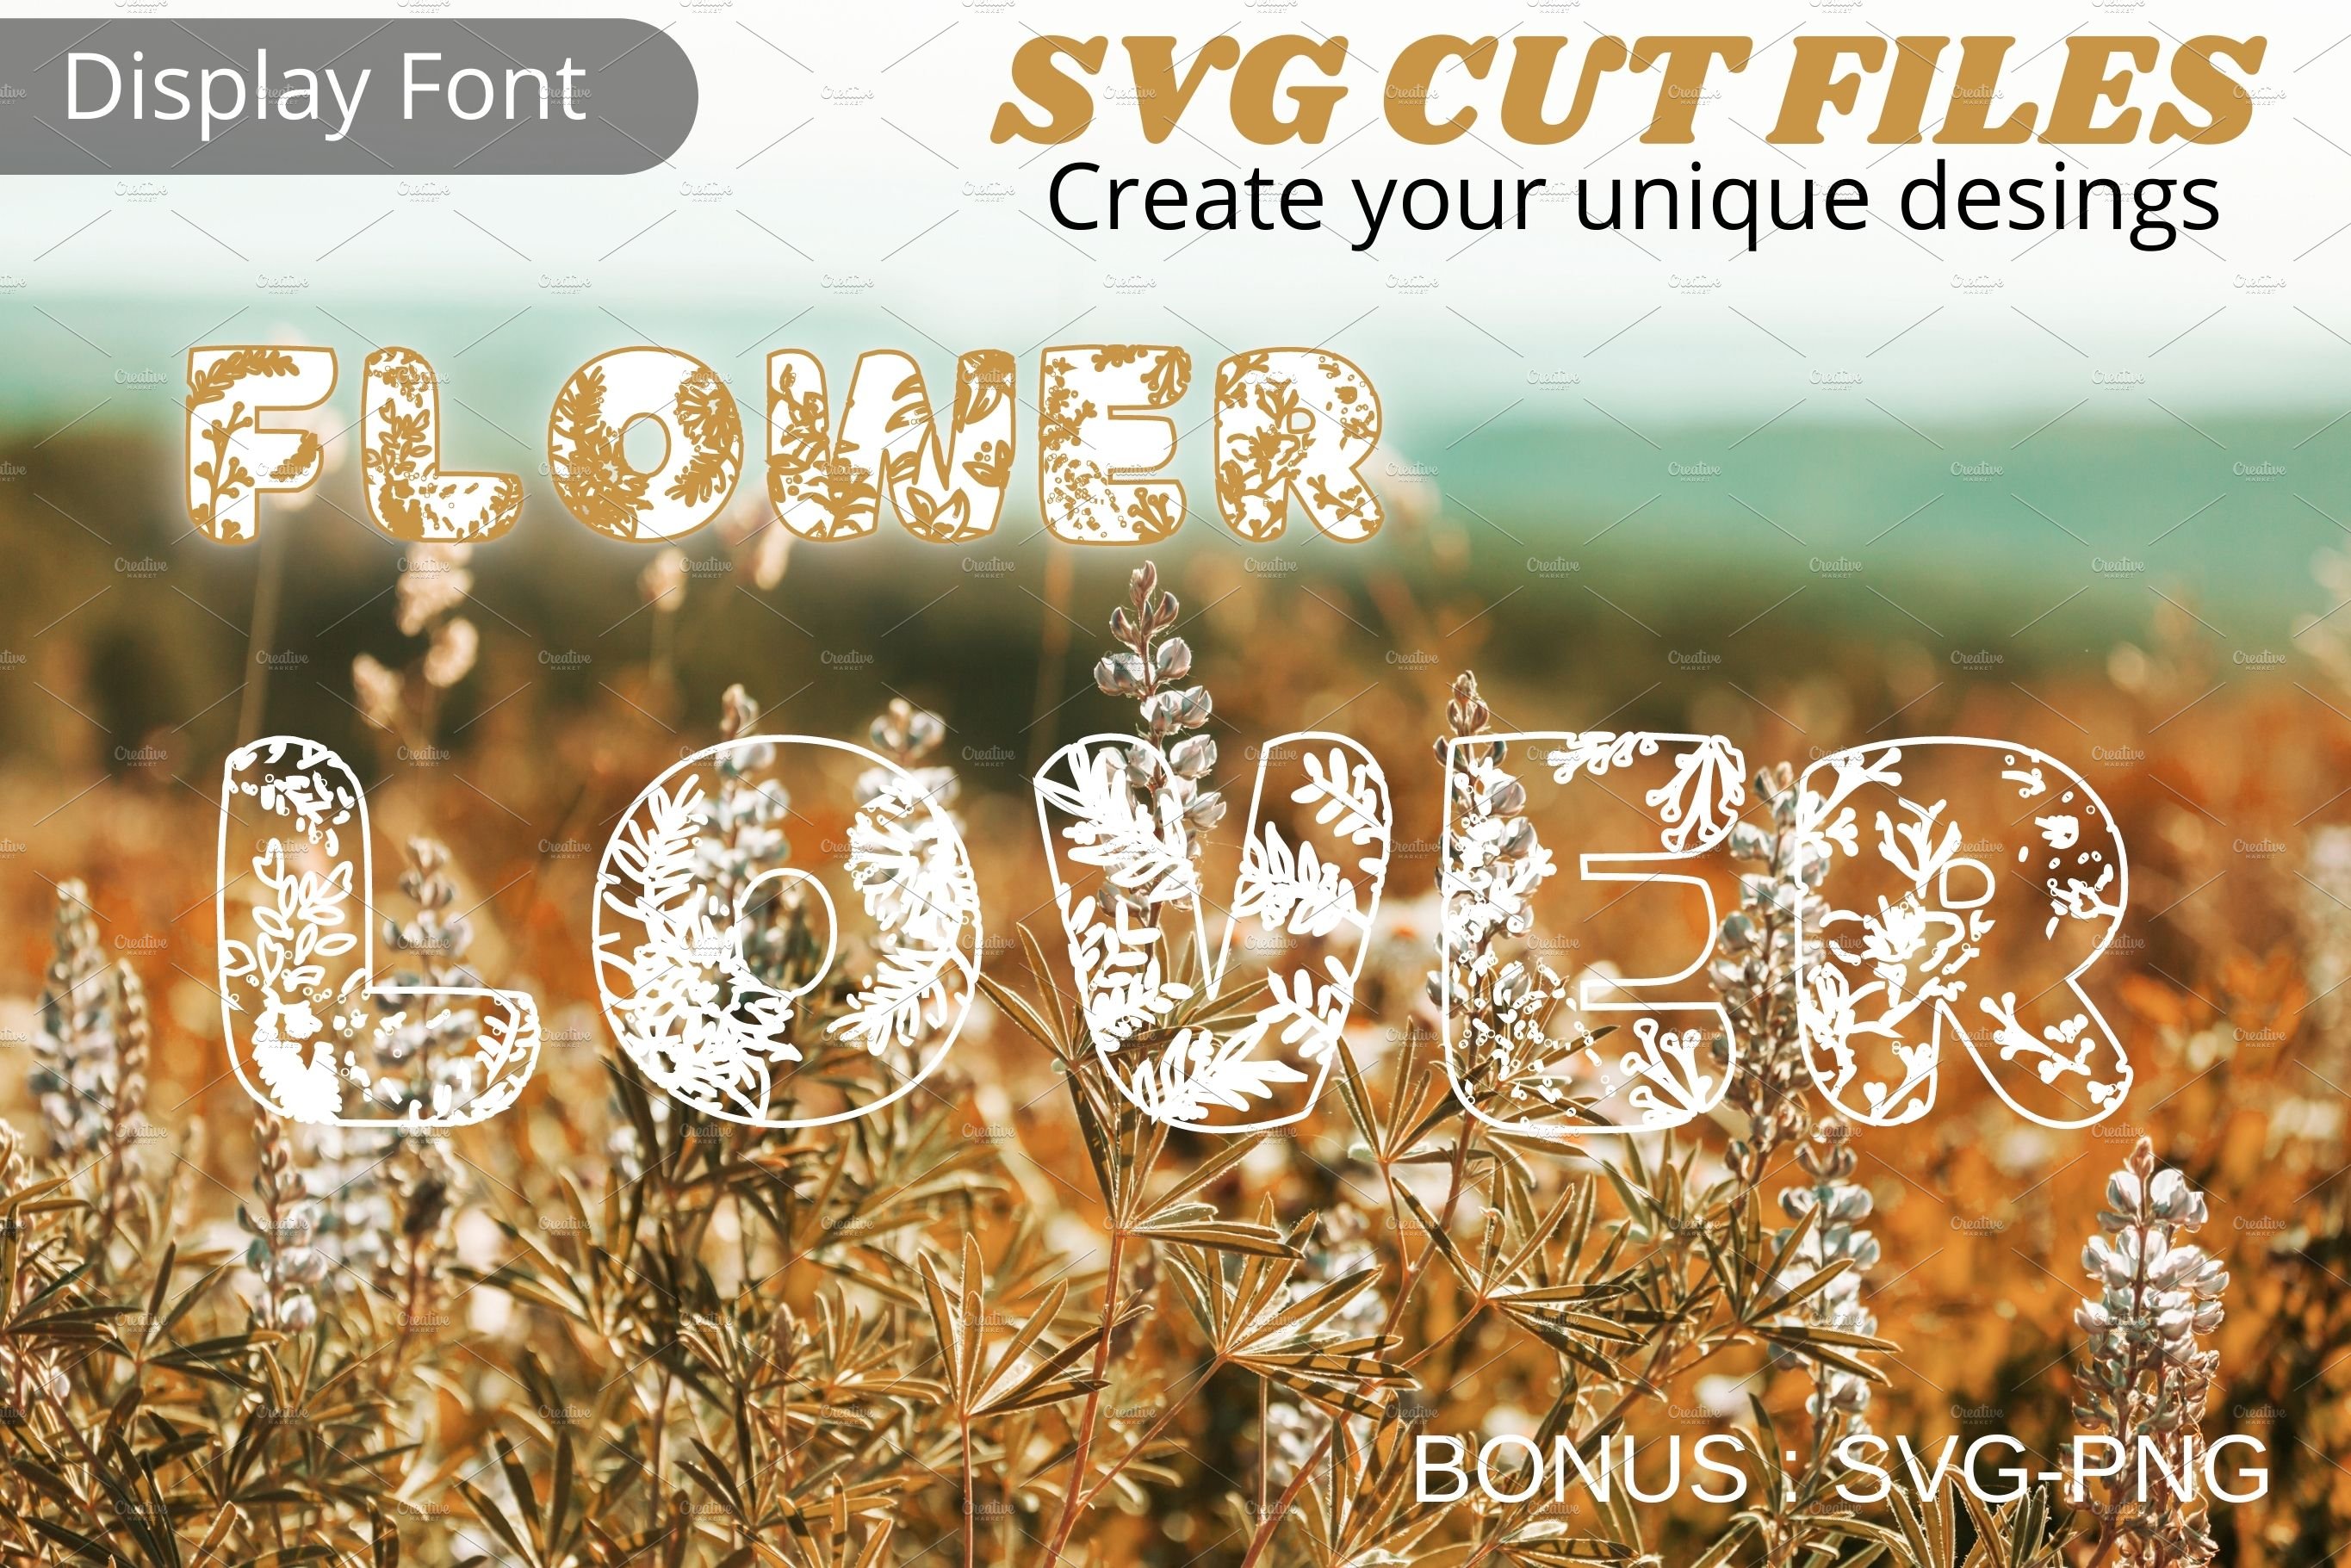 Flower Lover font, SVG font cover image.